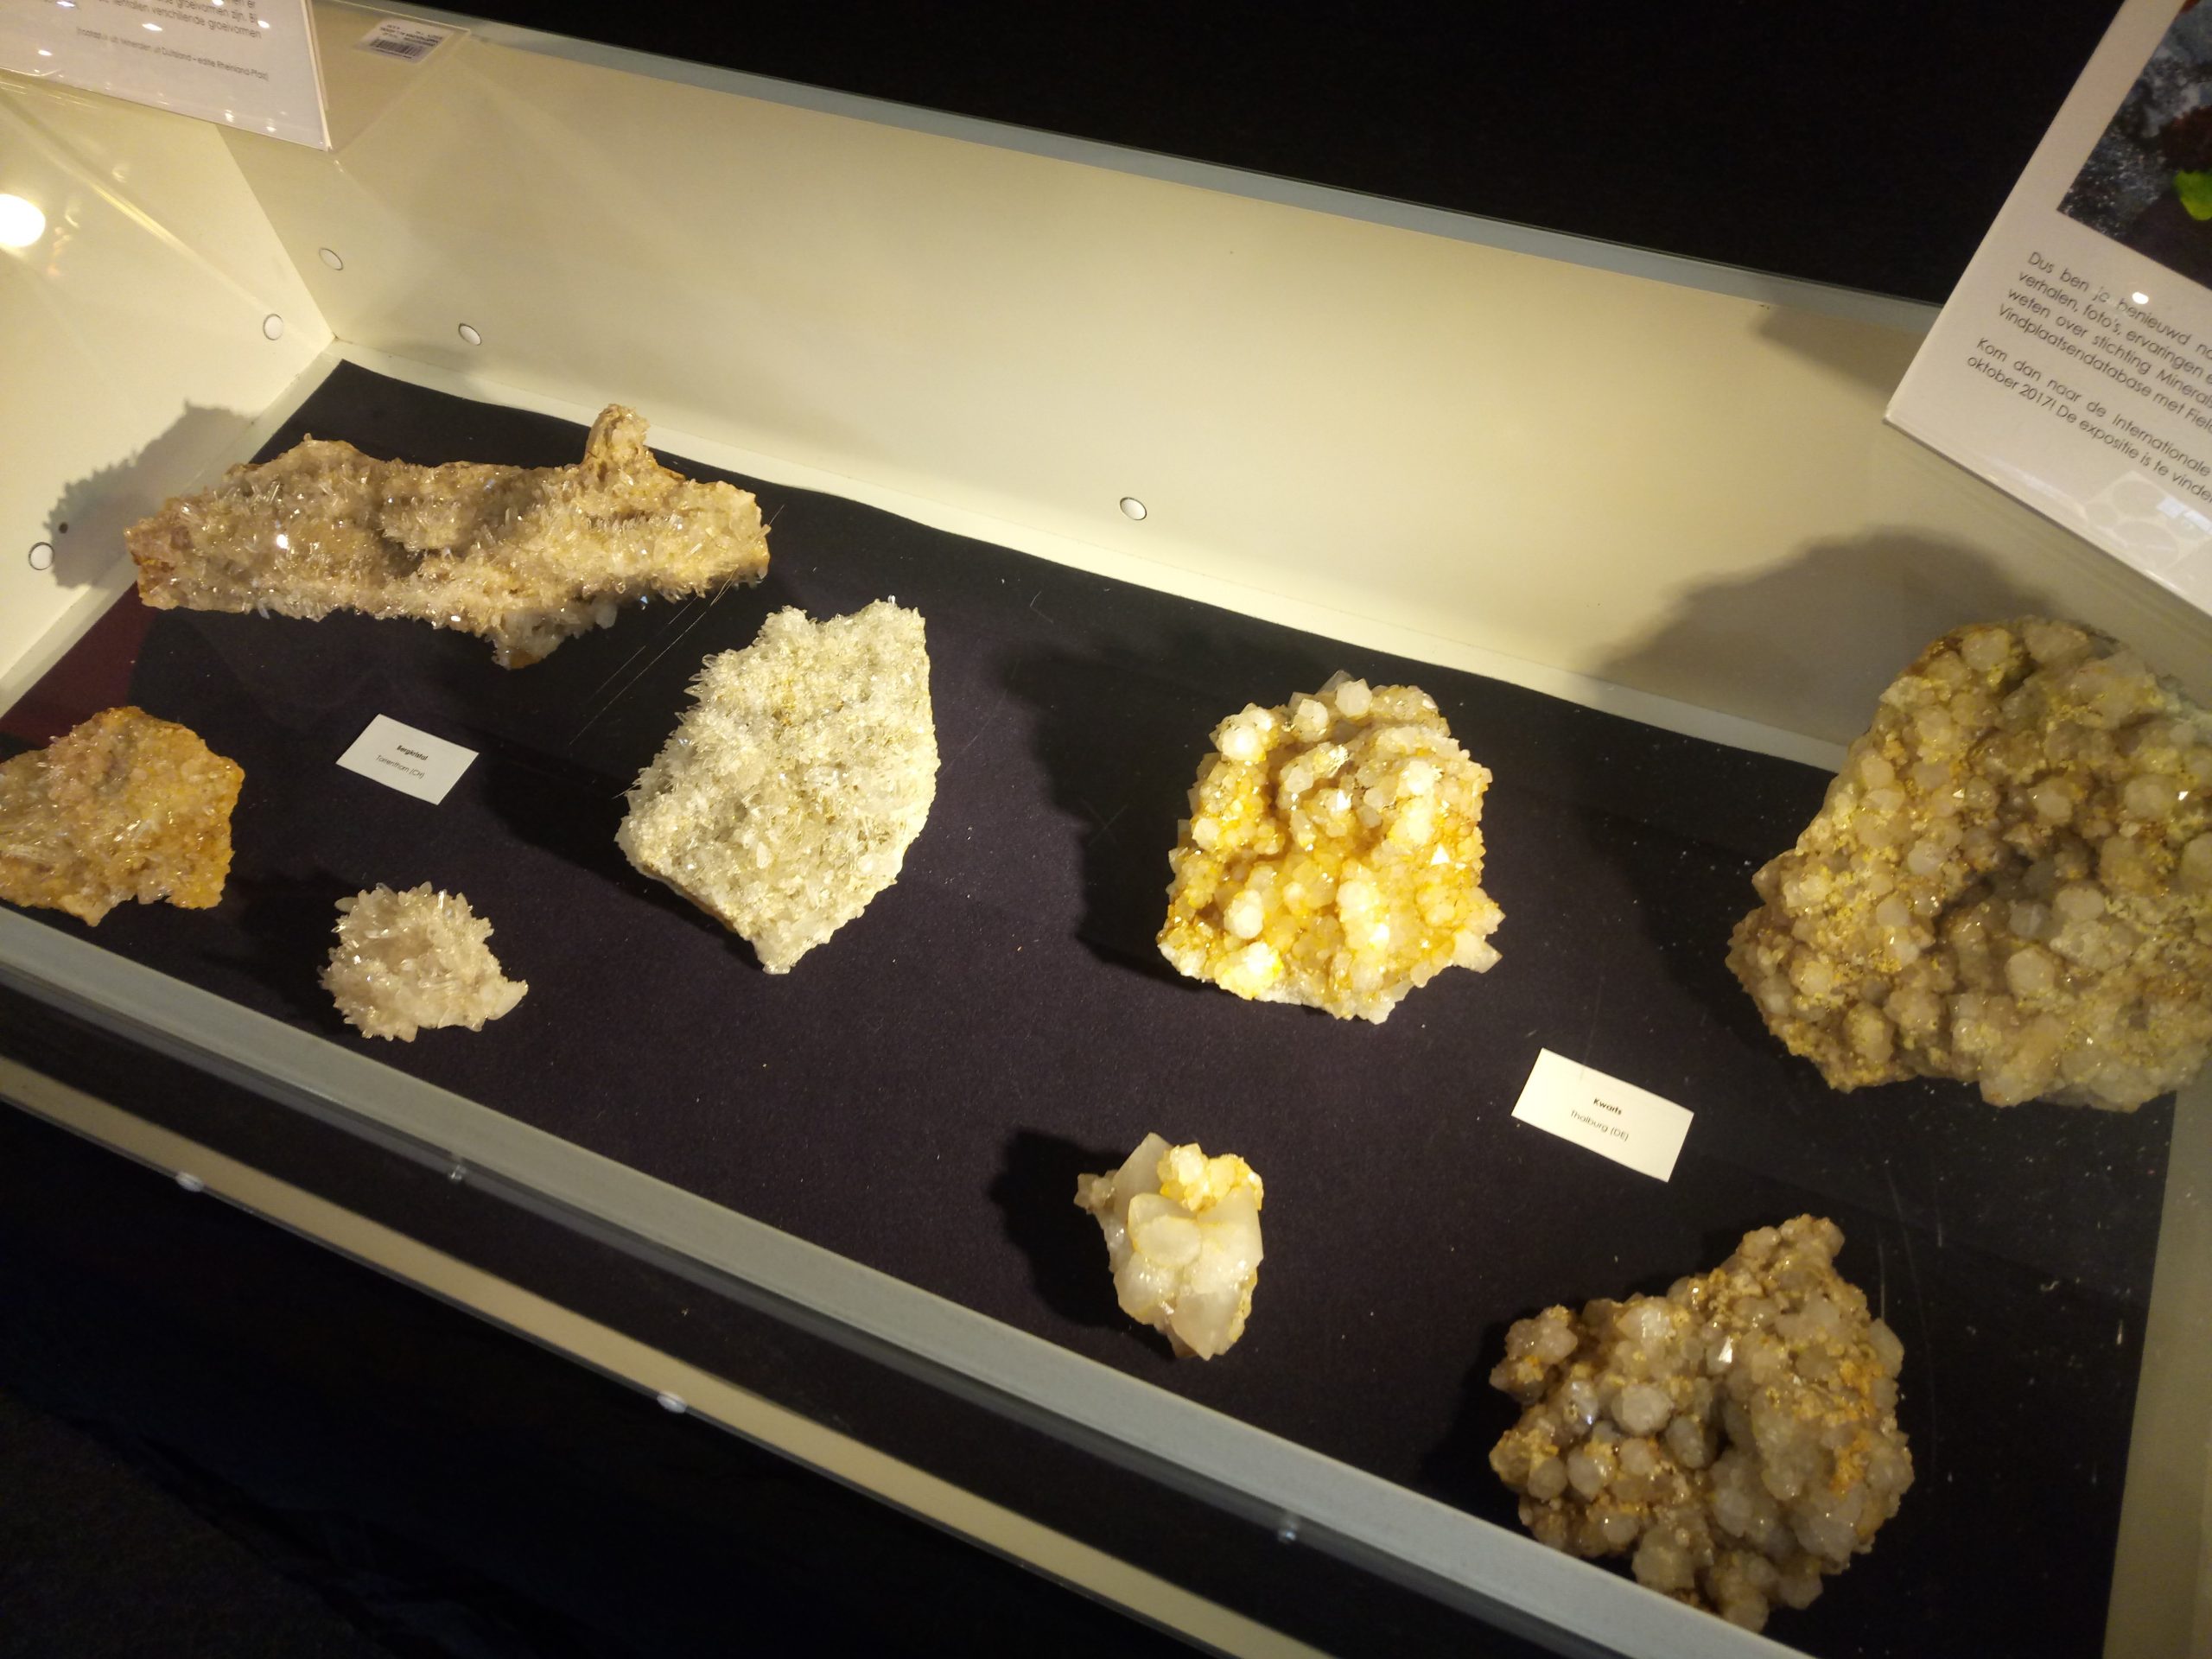 Kristallen edelstenen mineralen beurs expositie